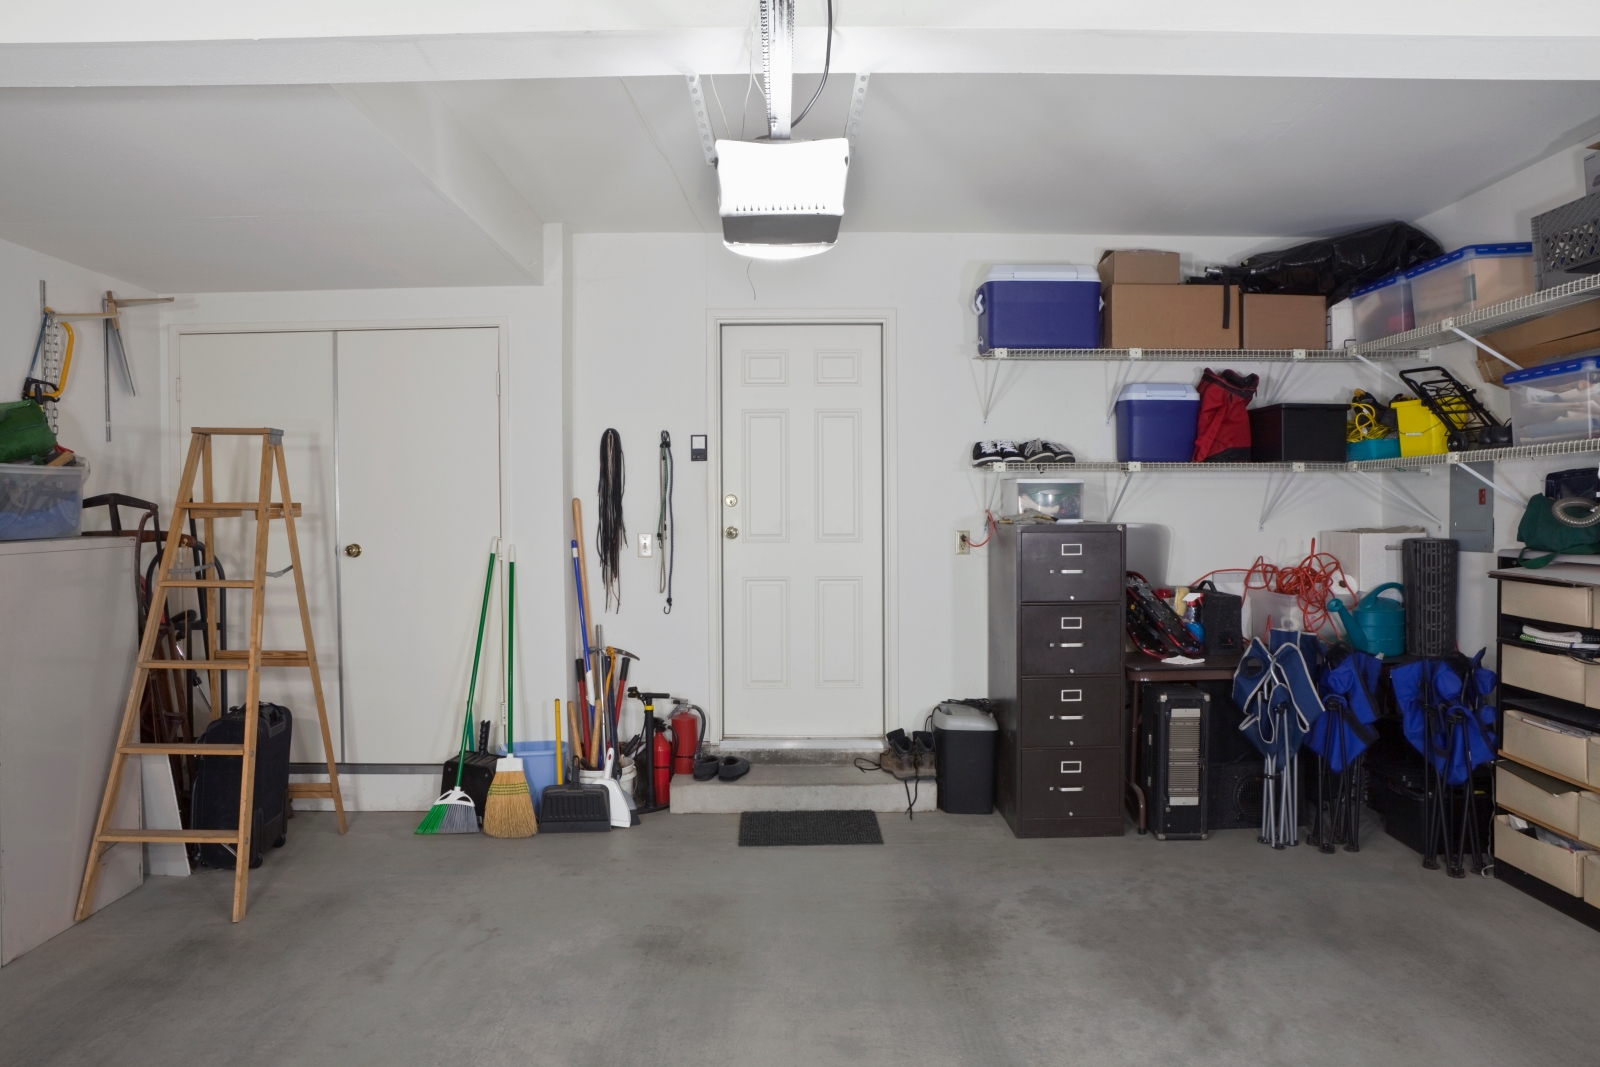 Wszystko, co warto wiedzieć o pielęgnacji garażu